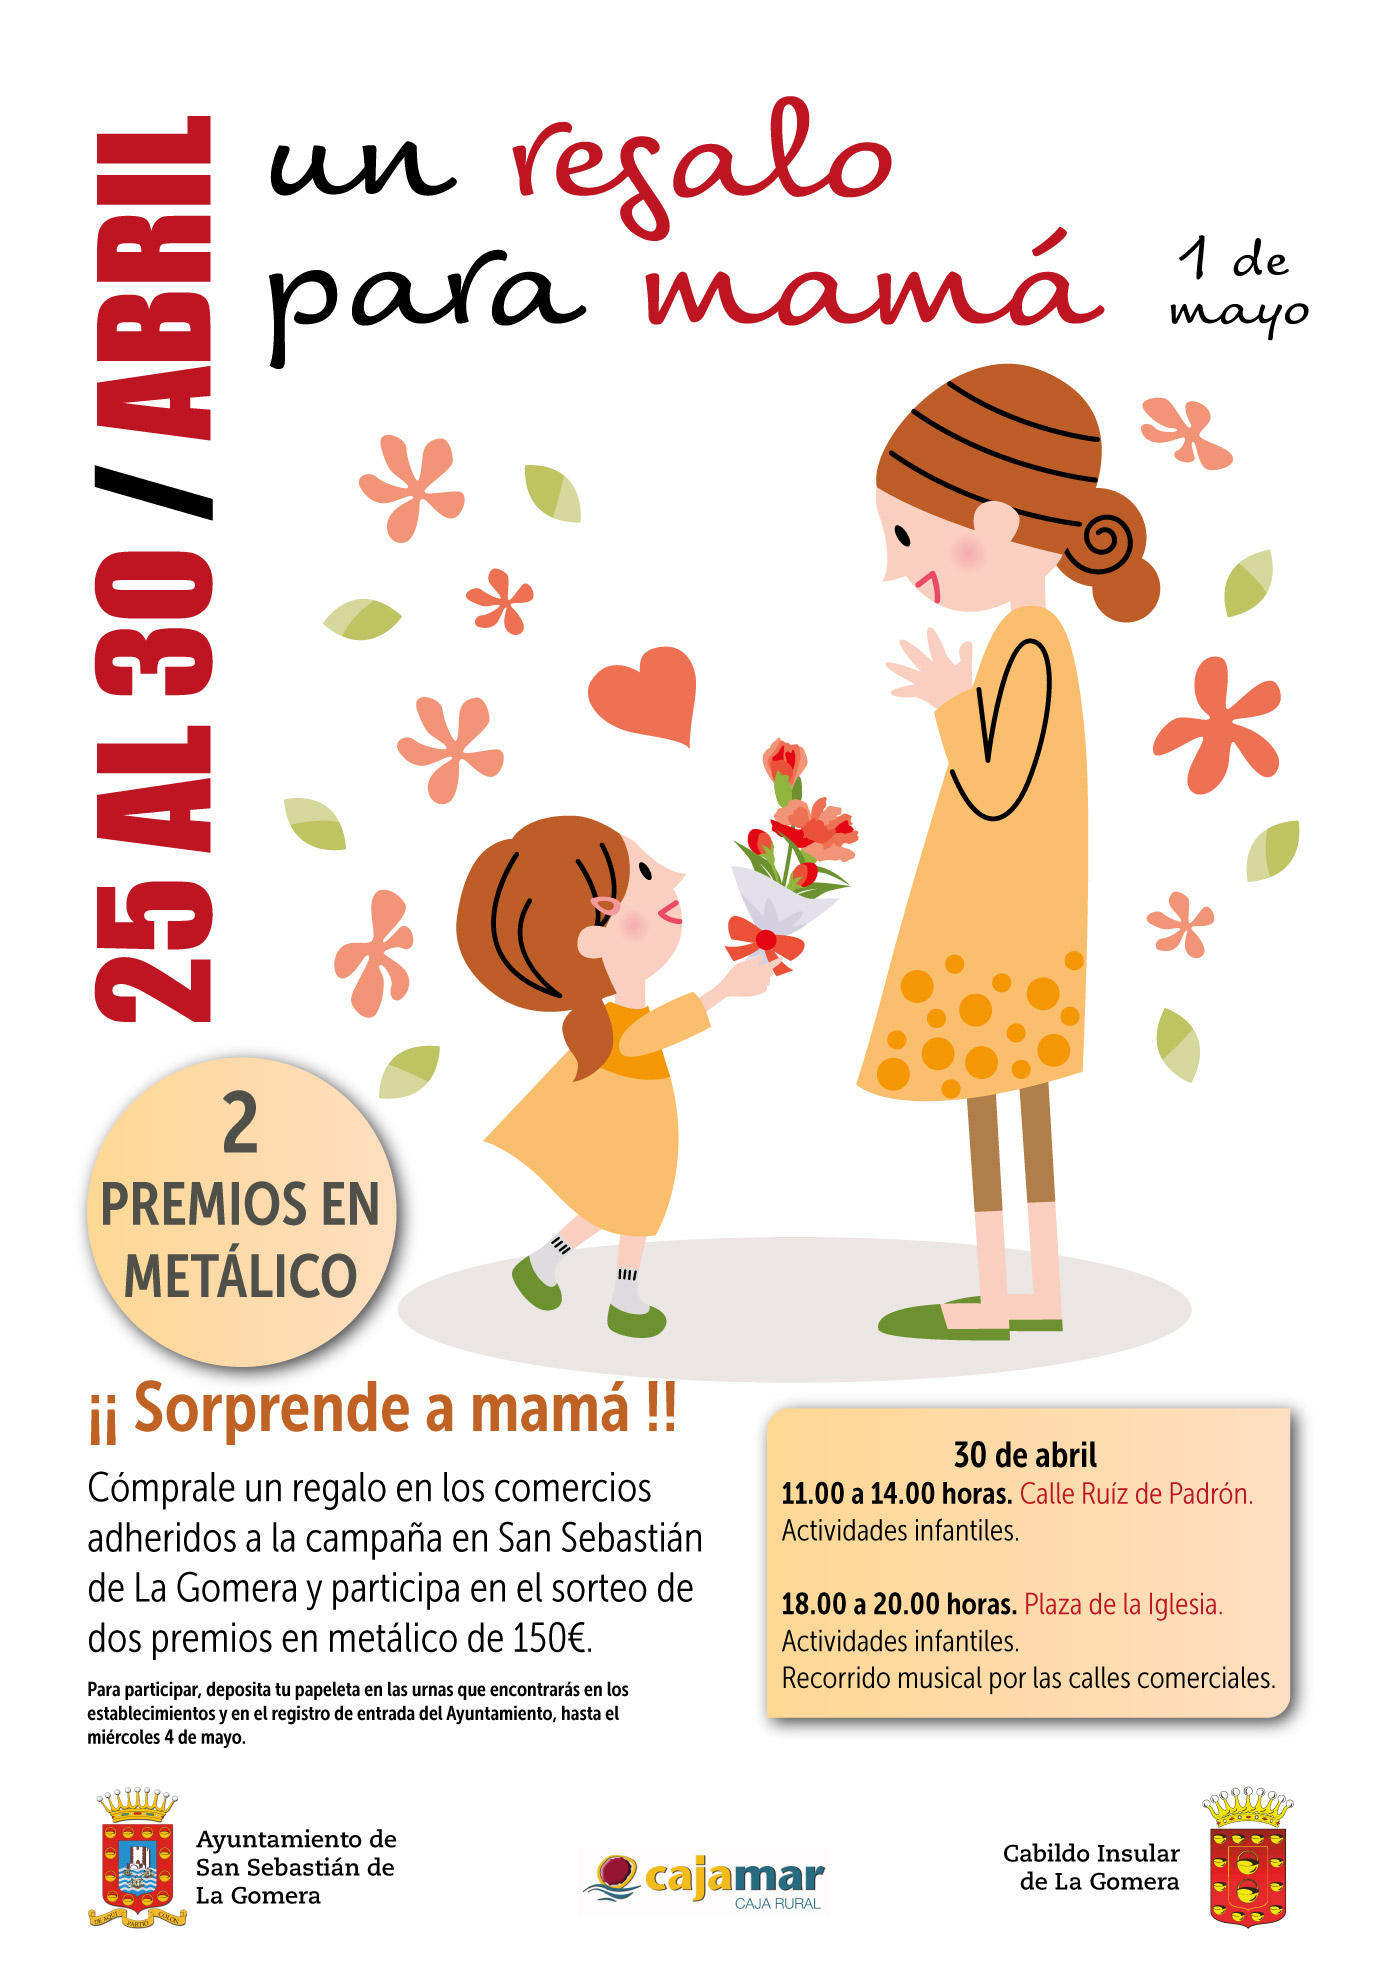 La campaña del Día de La Madre deja  euros en los comercios de San  Sebastián de La Gomera - Ayuntamiento de San Sebastián de La Gomera